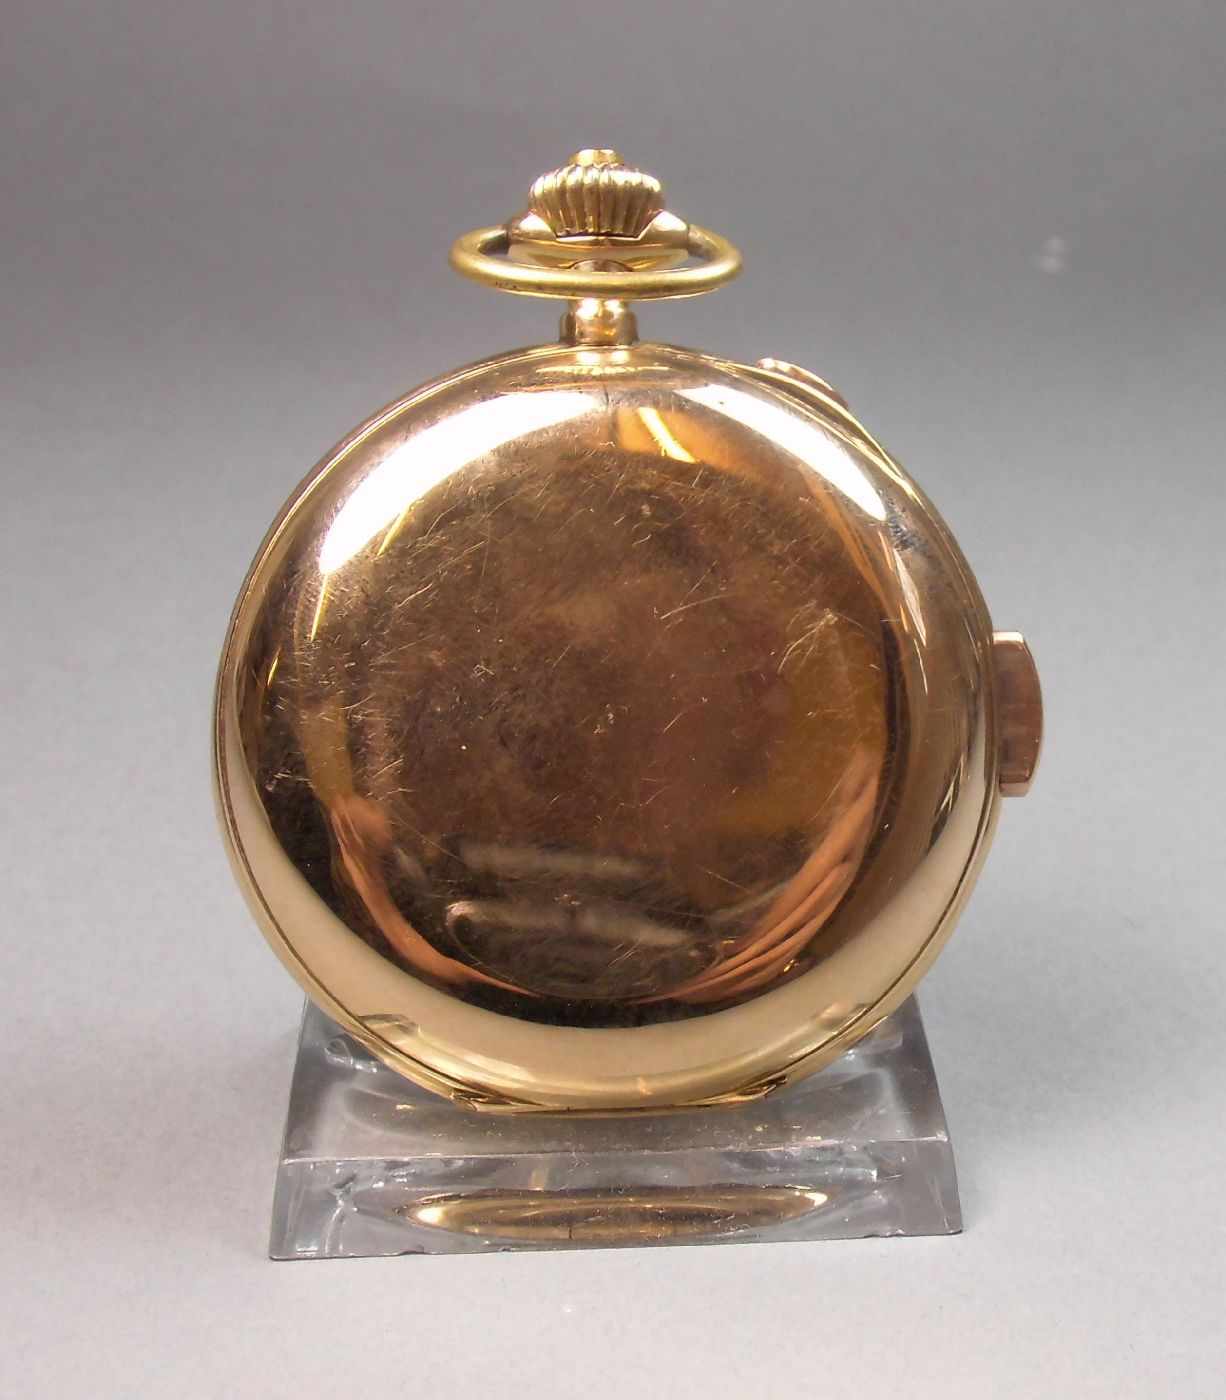 GROSSE GOLD - SAVONETTE, Minutenrepetition mit Chronograf, Taschenuhr / pocket watch, Schweiz, 1888, - Bild 6 aus 7